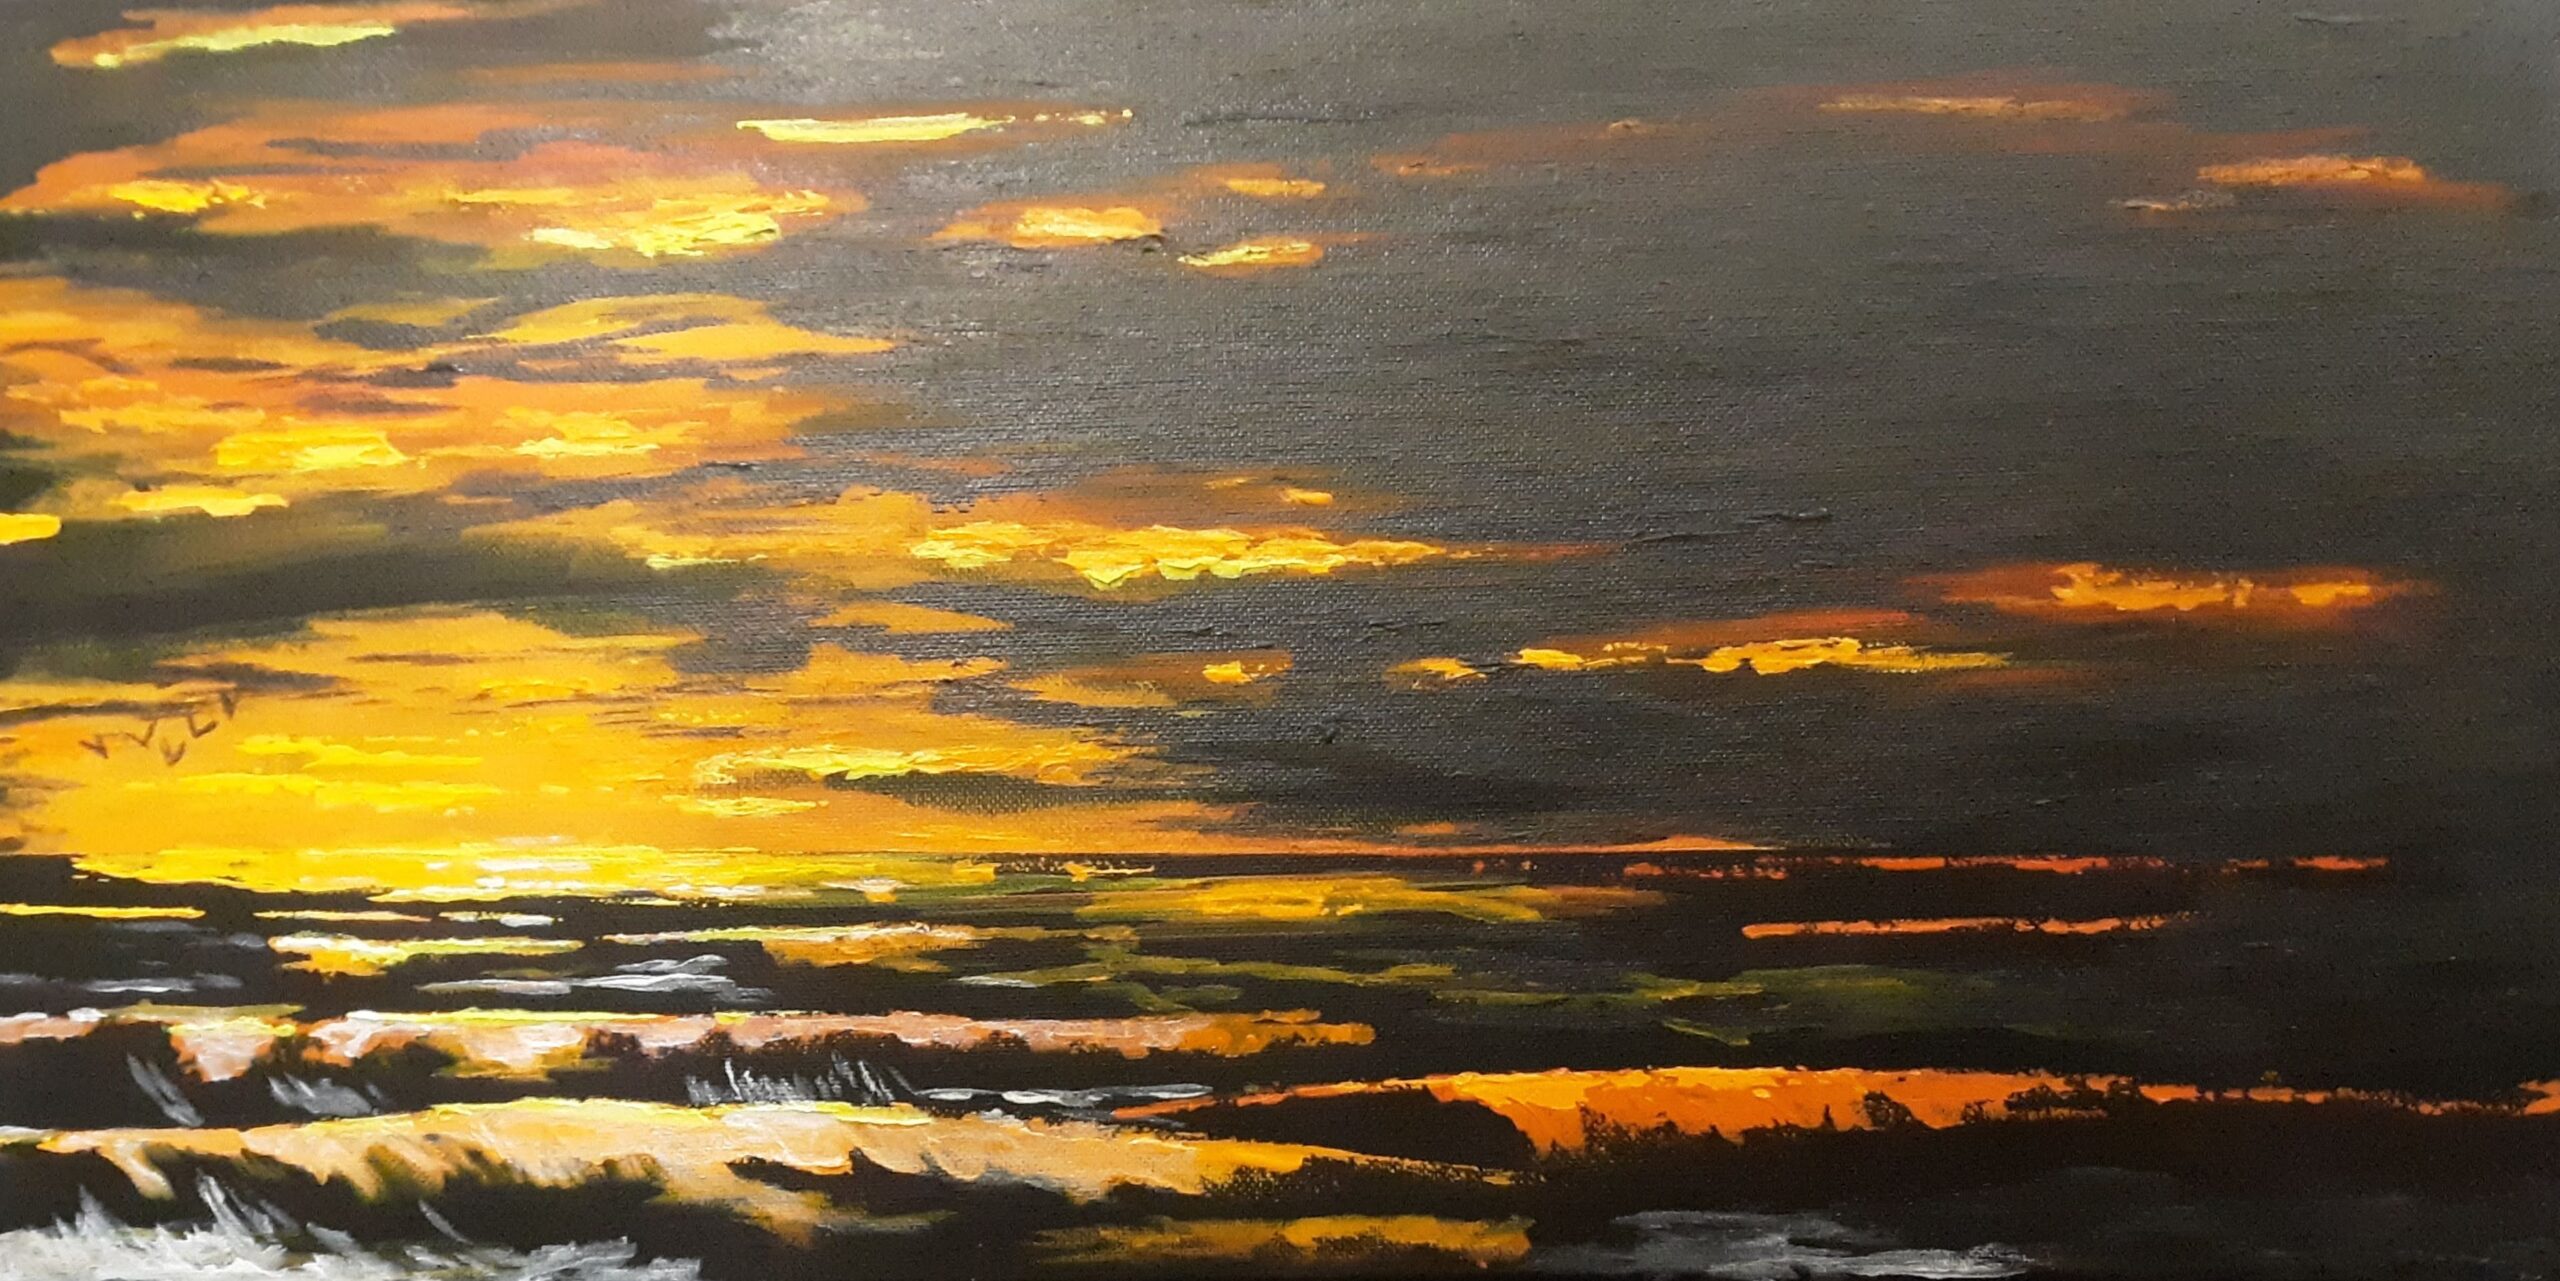 A 10 x 20 acrylic on canvas of sunrise over the ocean.